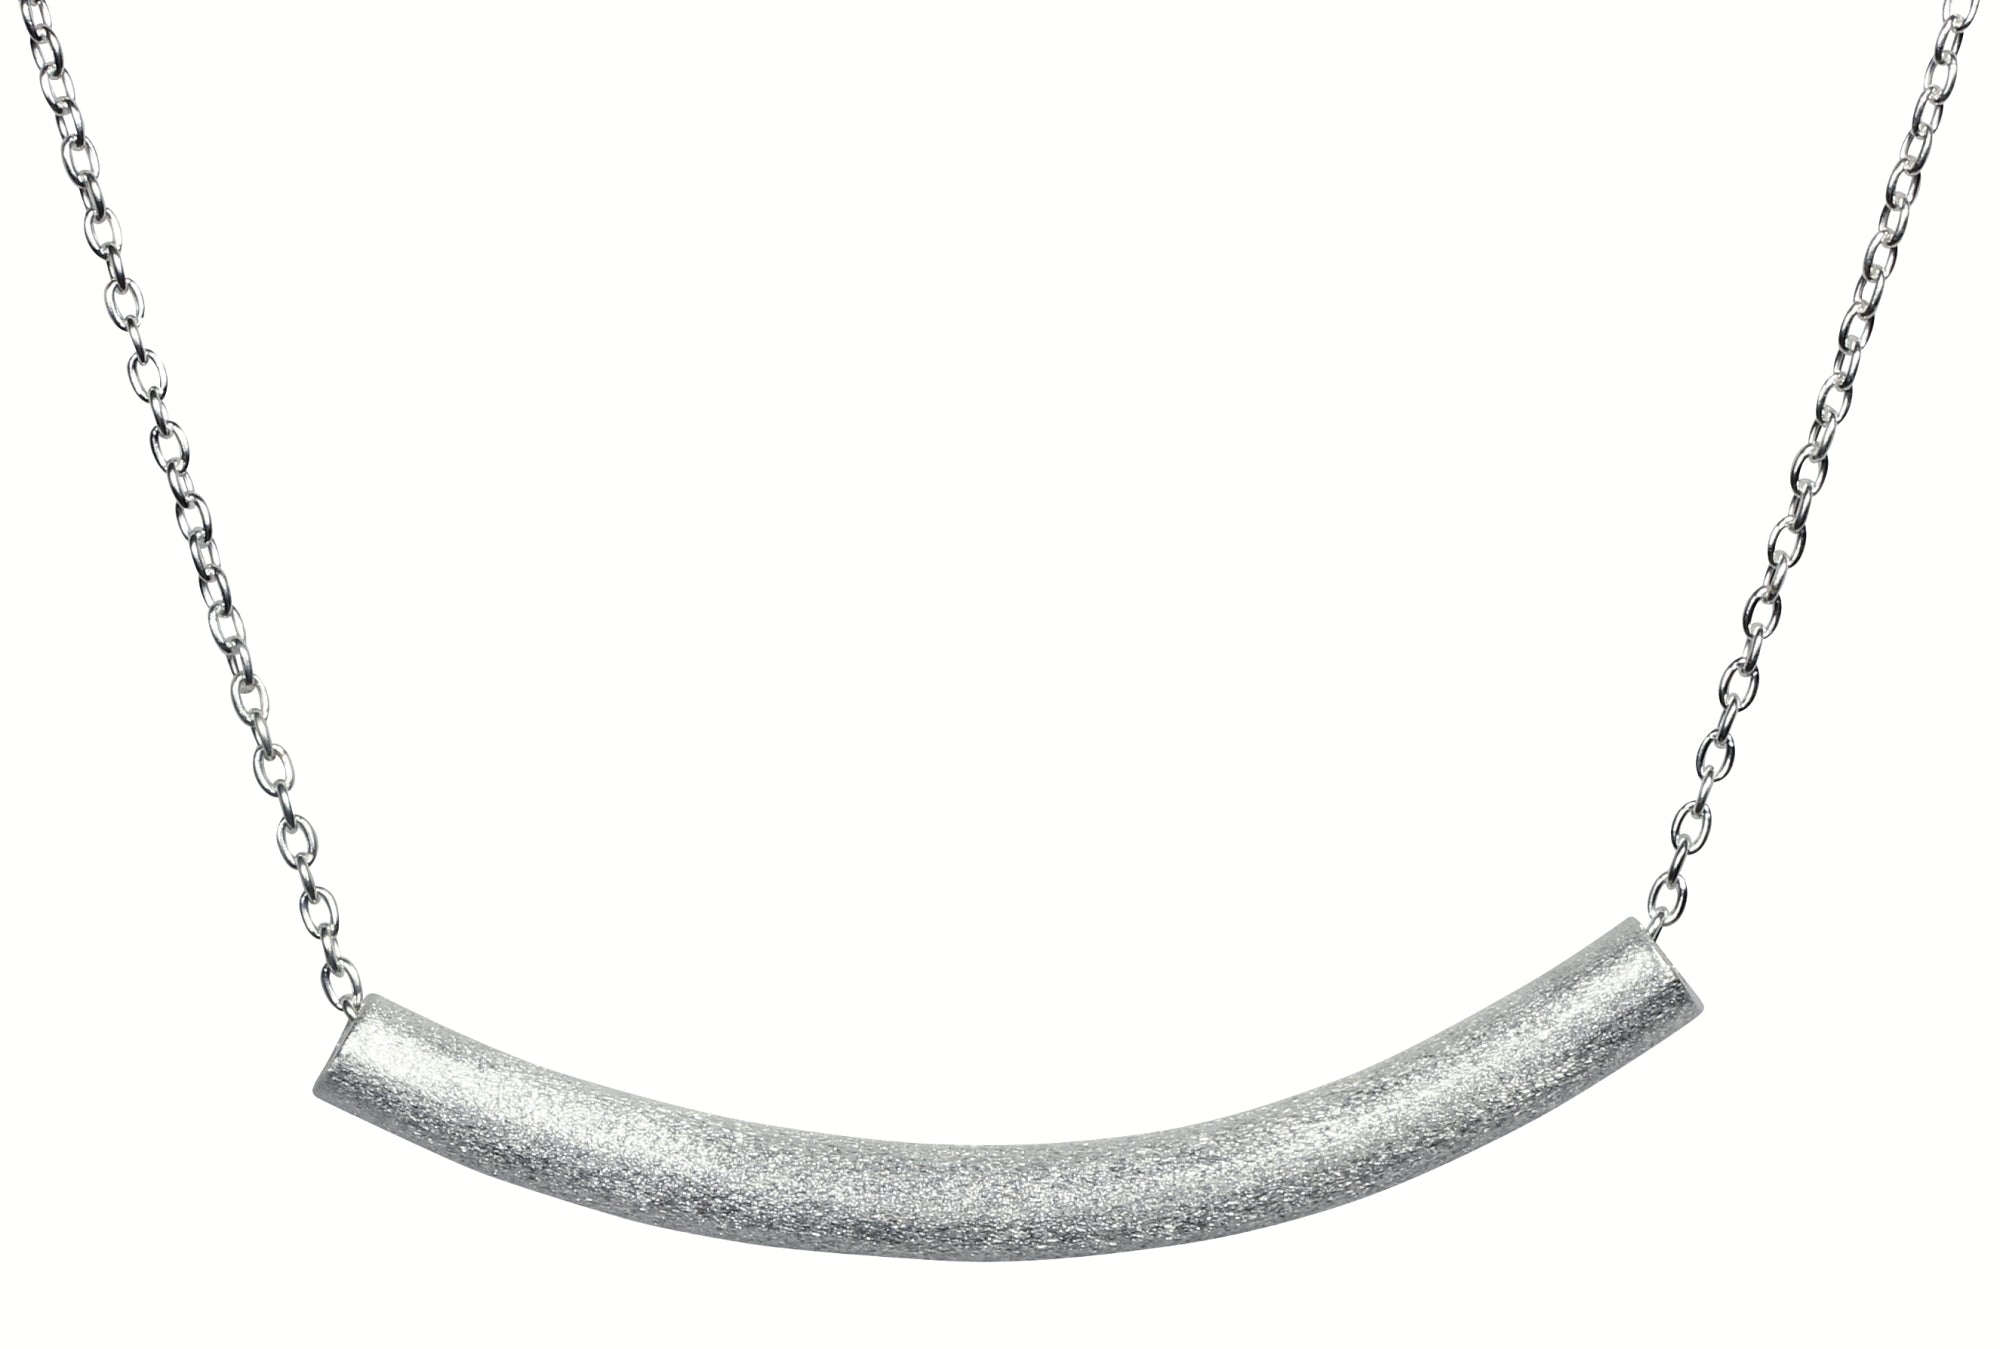 Feine Ankerkette aus Silber für Damen mit einem auf die Ketten gefädelten Stäbchen als Zierelement.